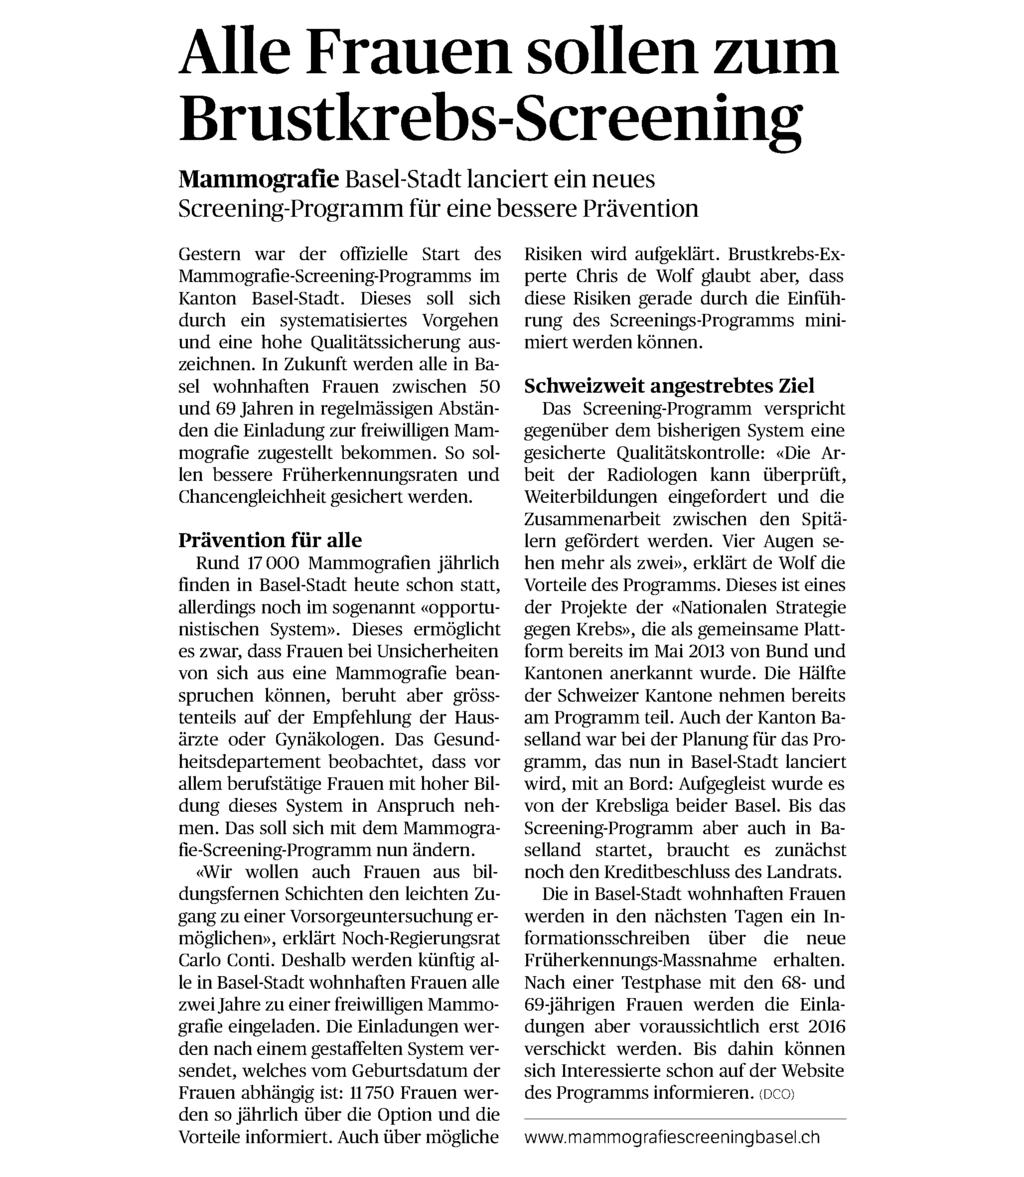 Datum: 03.07.2014 5 / 24 Hauptausgabe Basellandschaftliche Zeitung 4410 Liestal 061/ 927 26 00 www.basellandschaftlichezeitung.